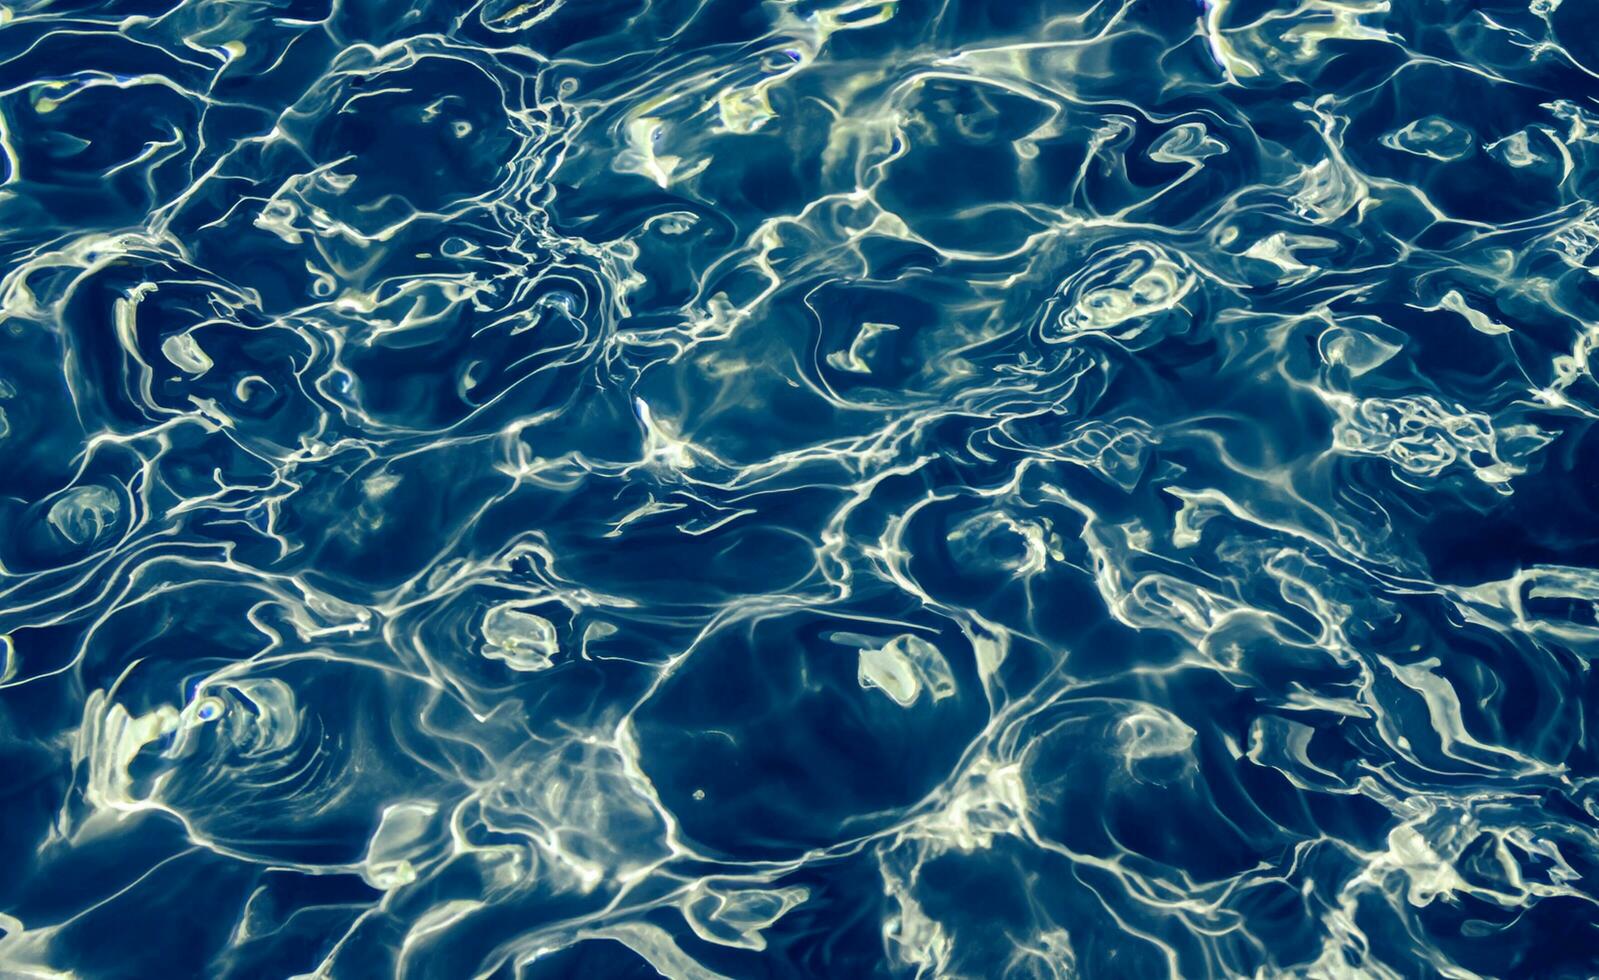 blauer Wasseroberflächenhintergrund foto